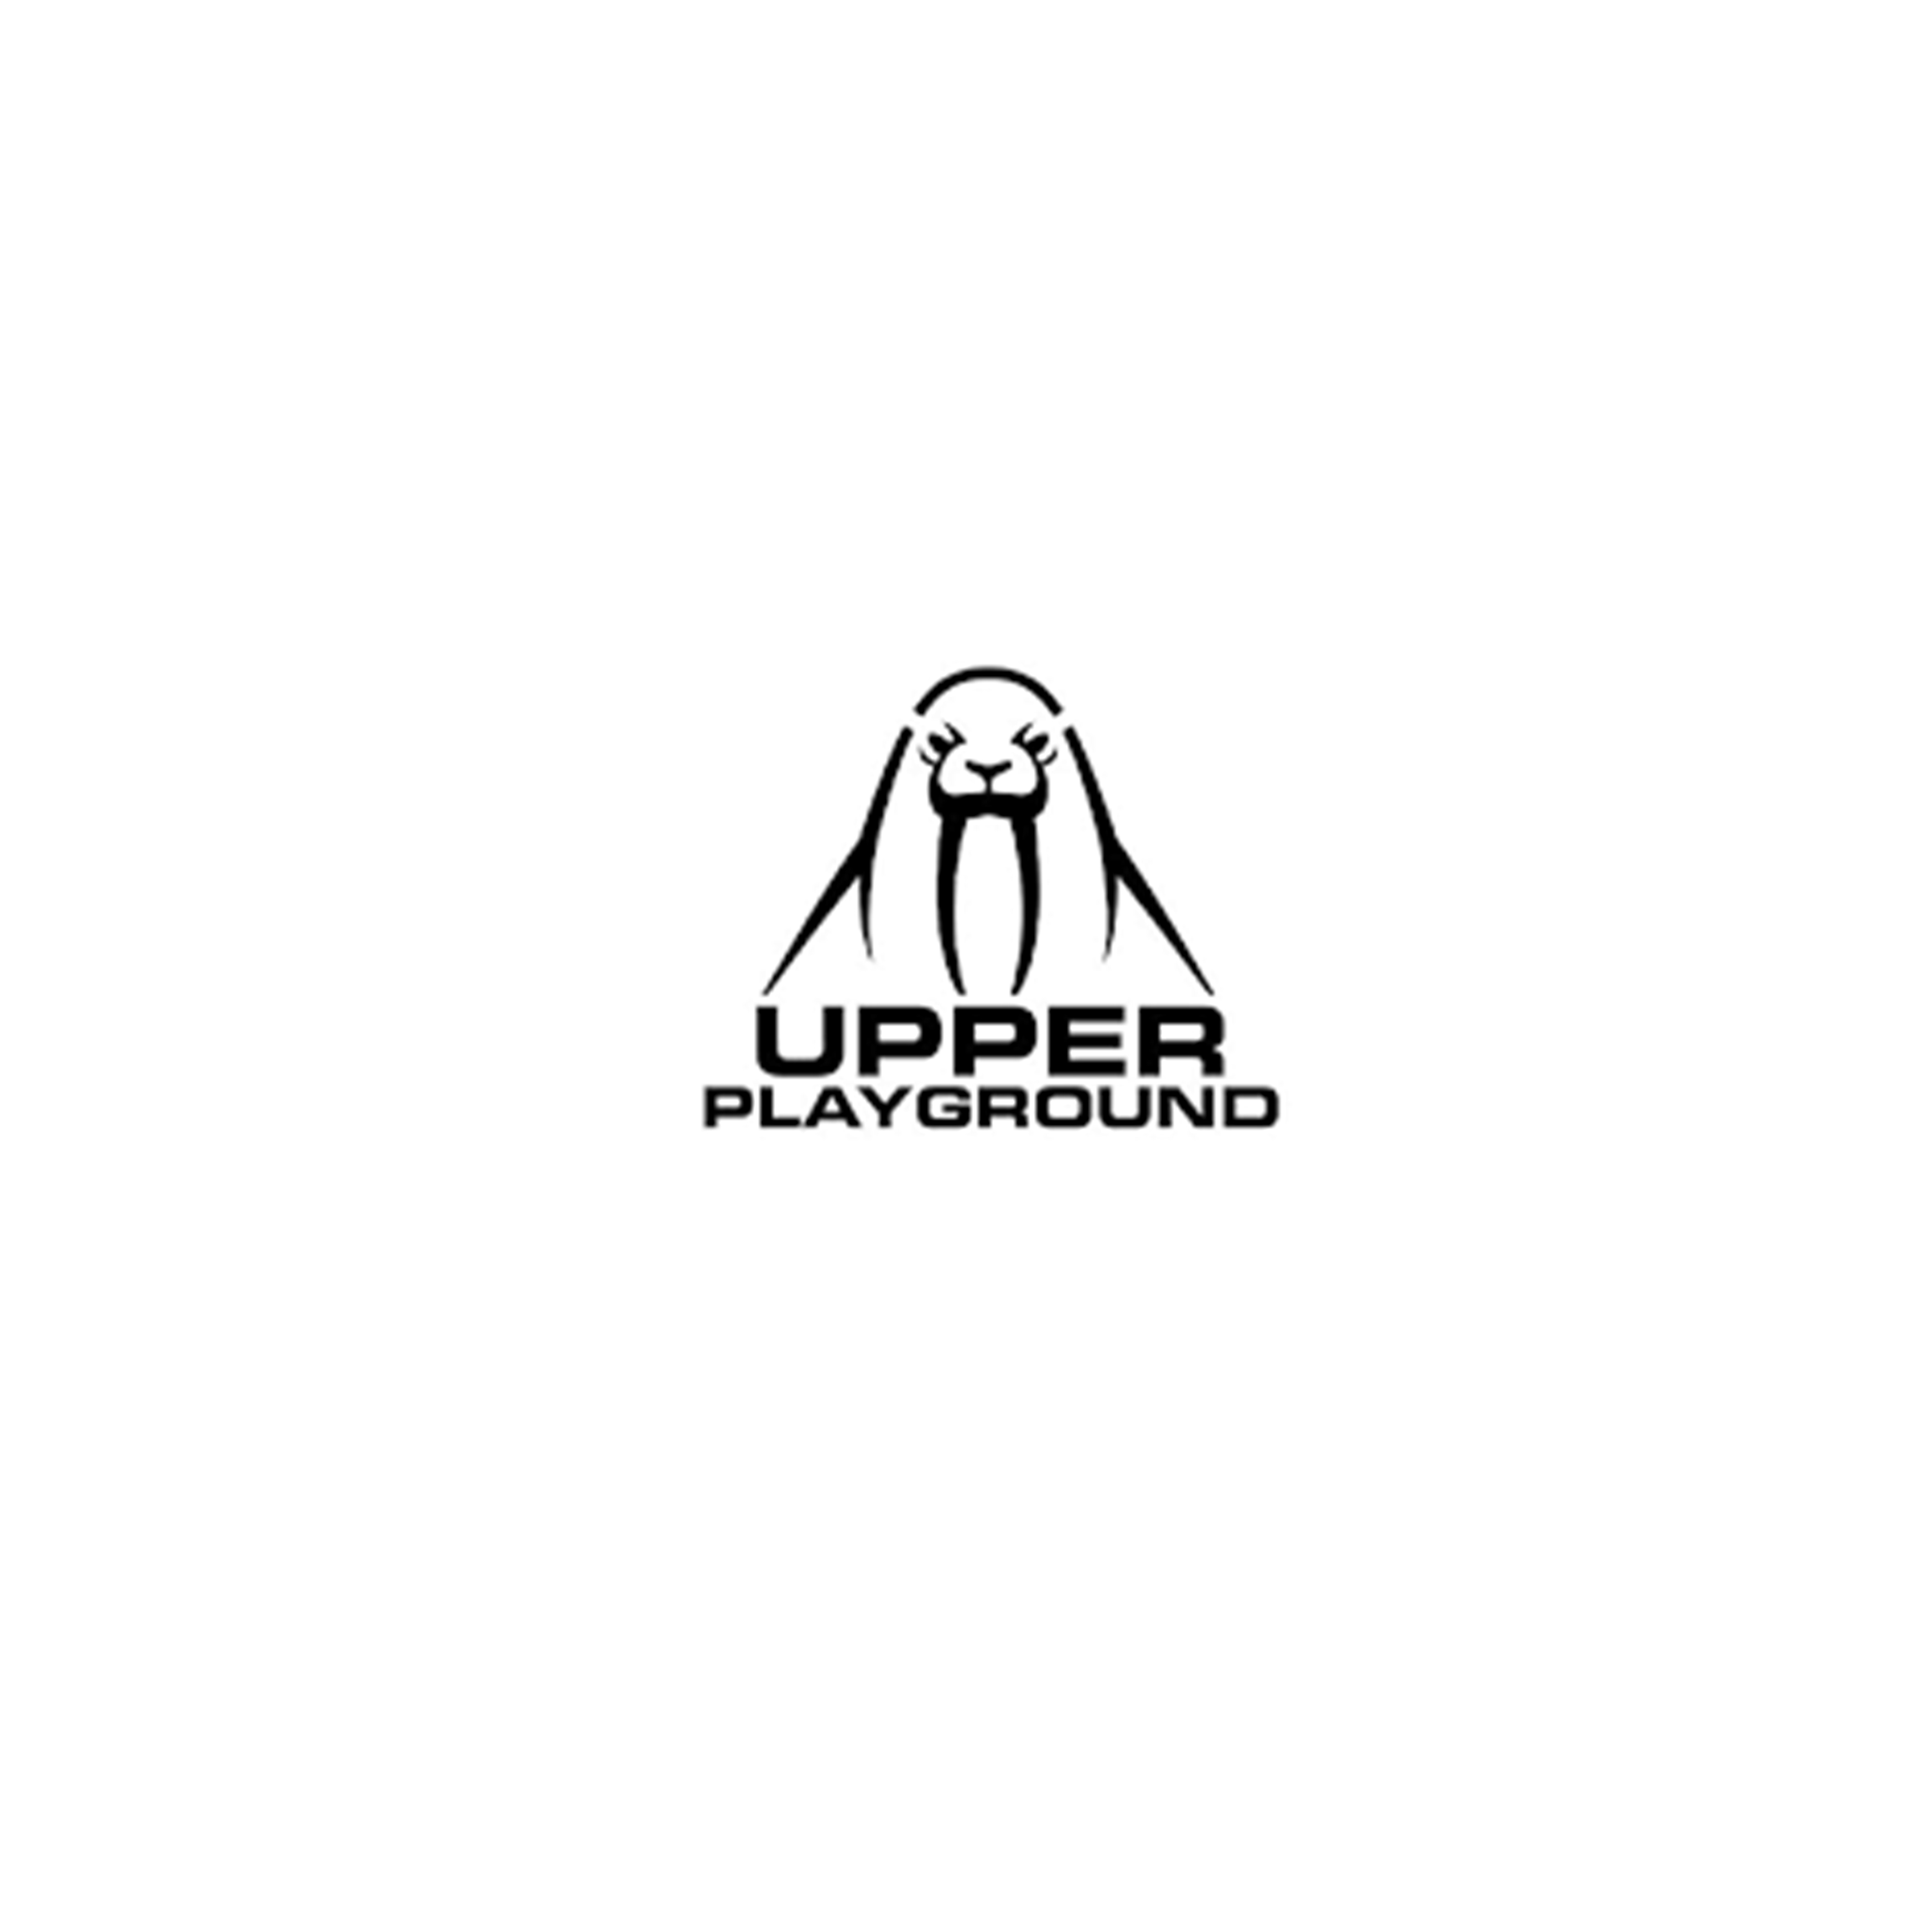 Shop Upperplayground logo